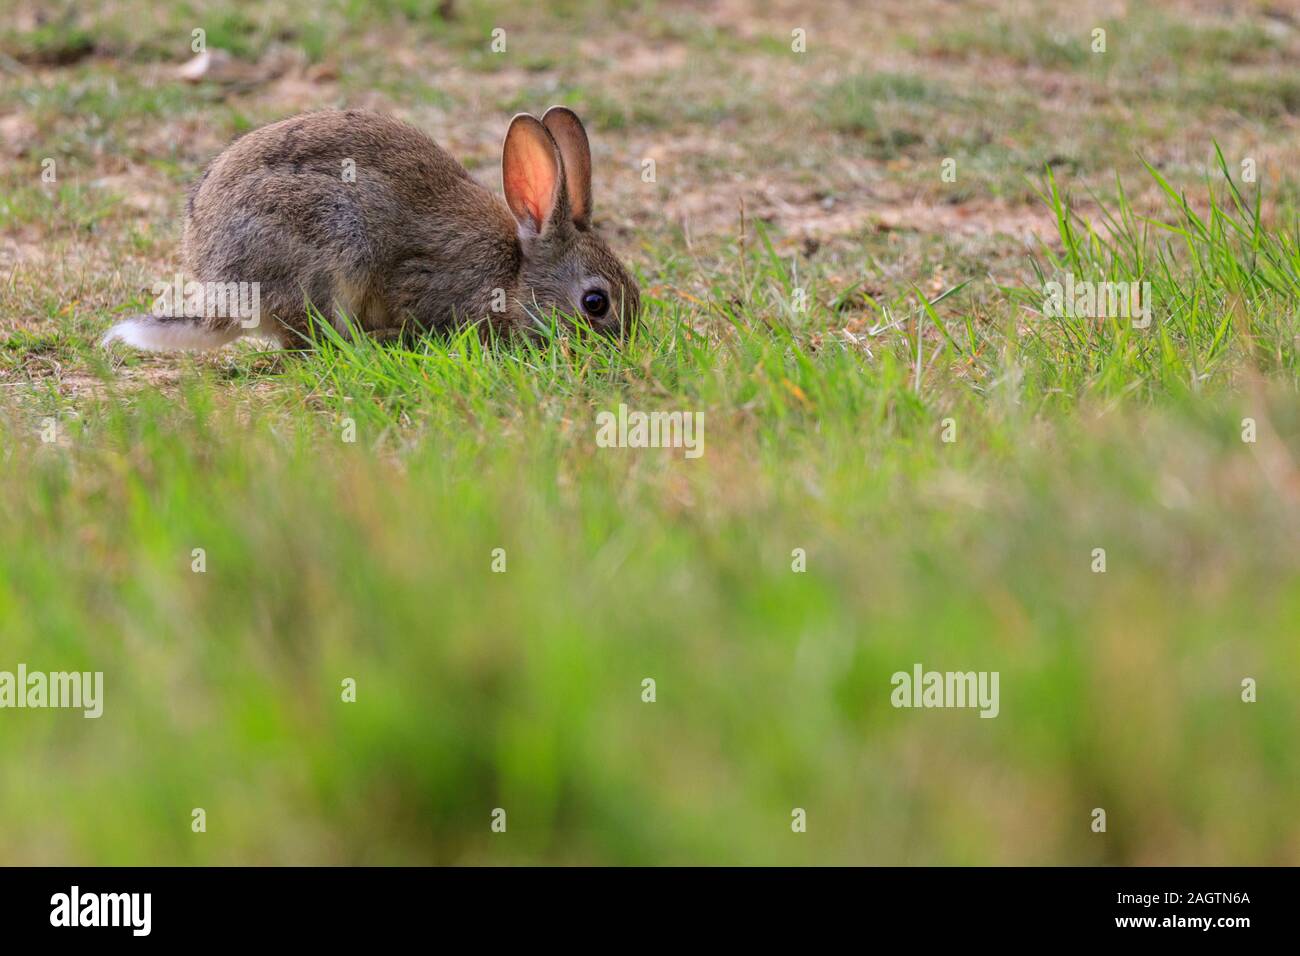 Europäische Kaninchen, Oryctolagus cuniculus, Sitzen, Beweidung in Gras, wild, in der Sonne Stockfoto